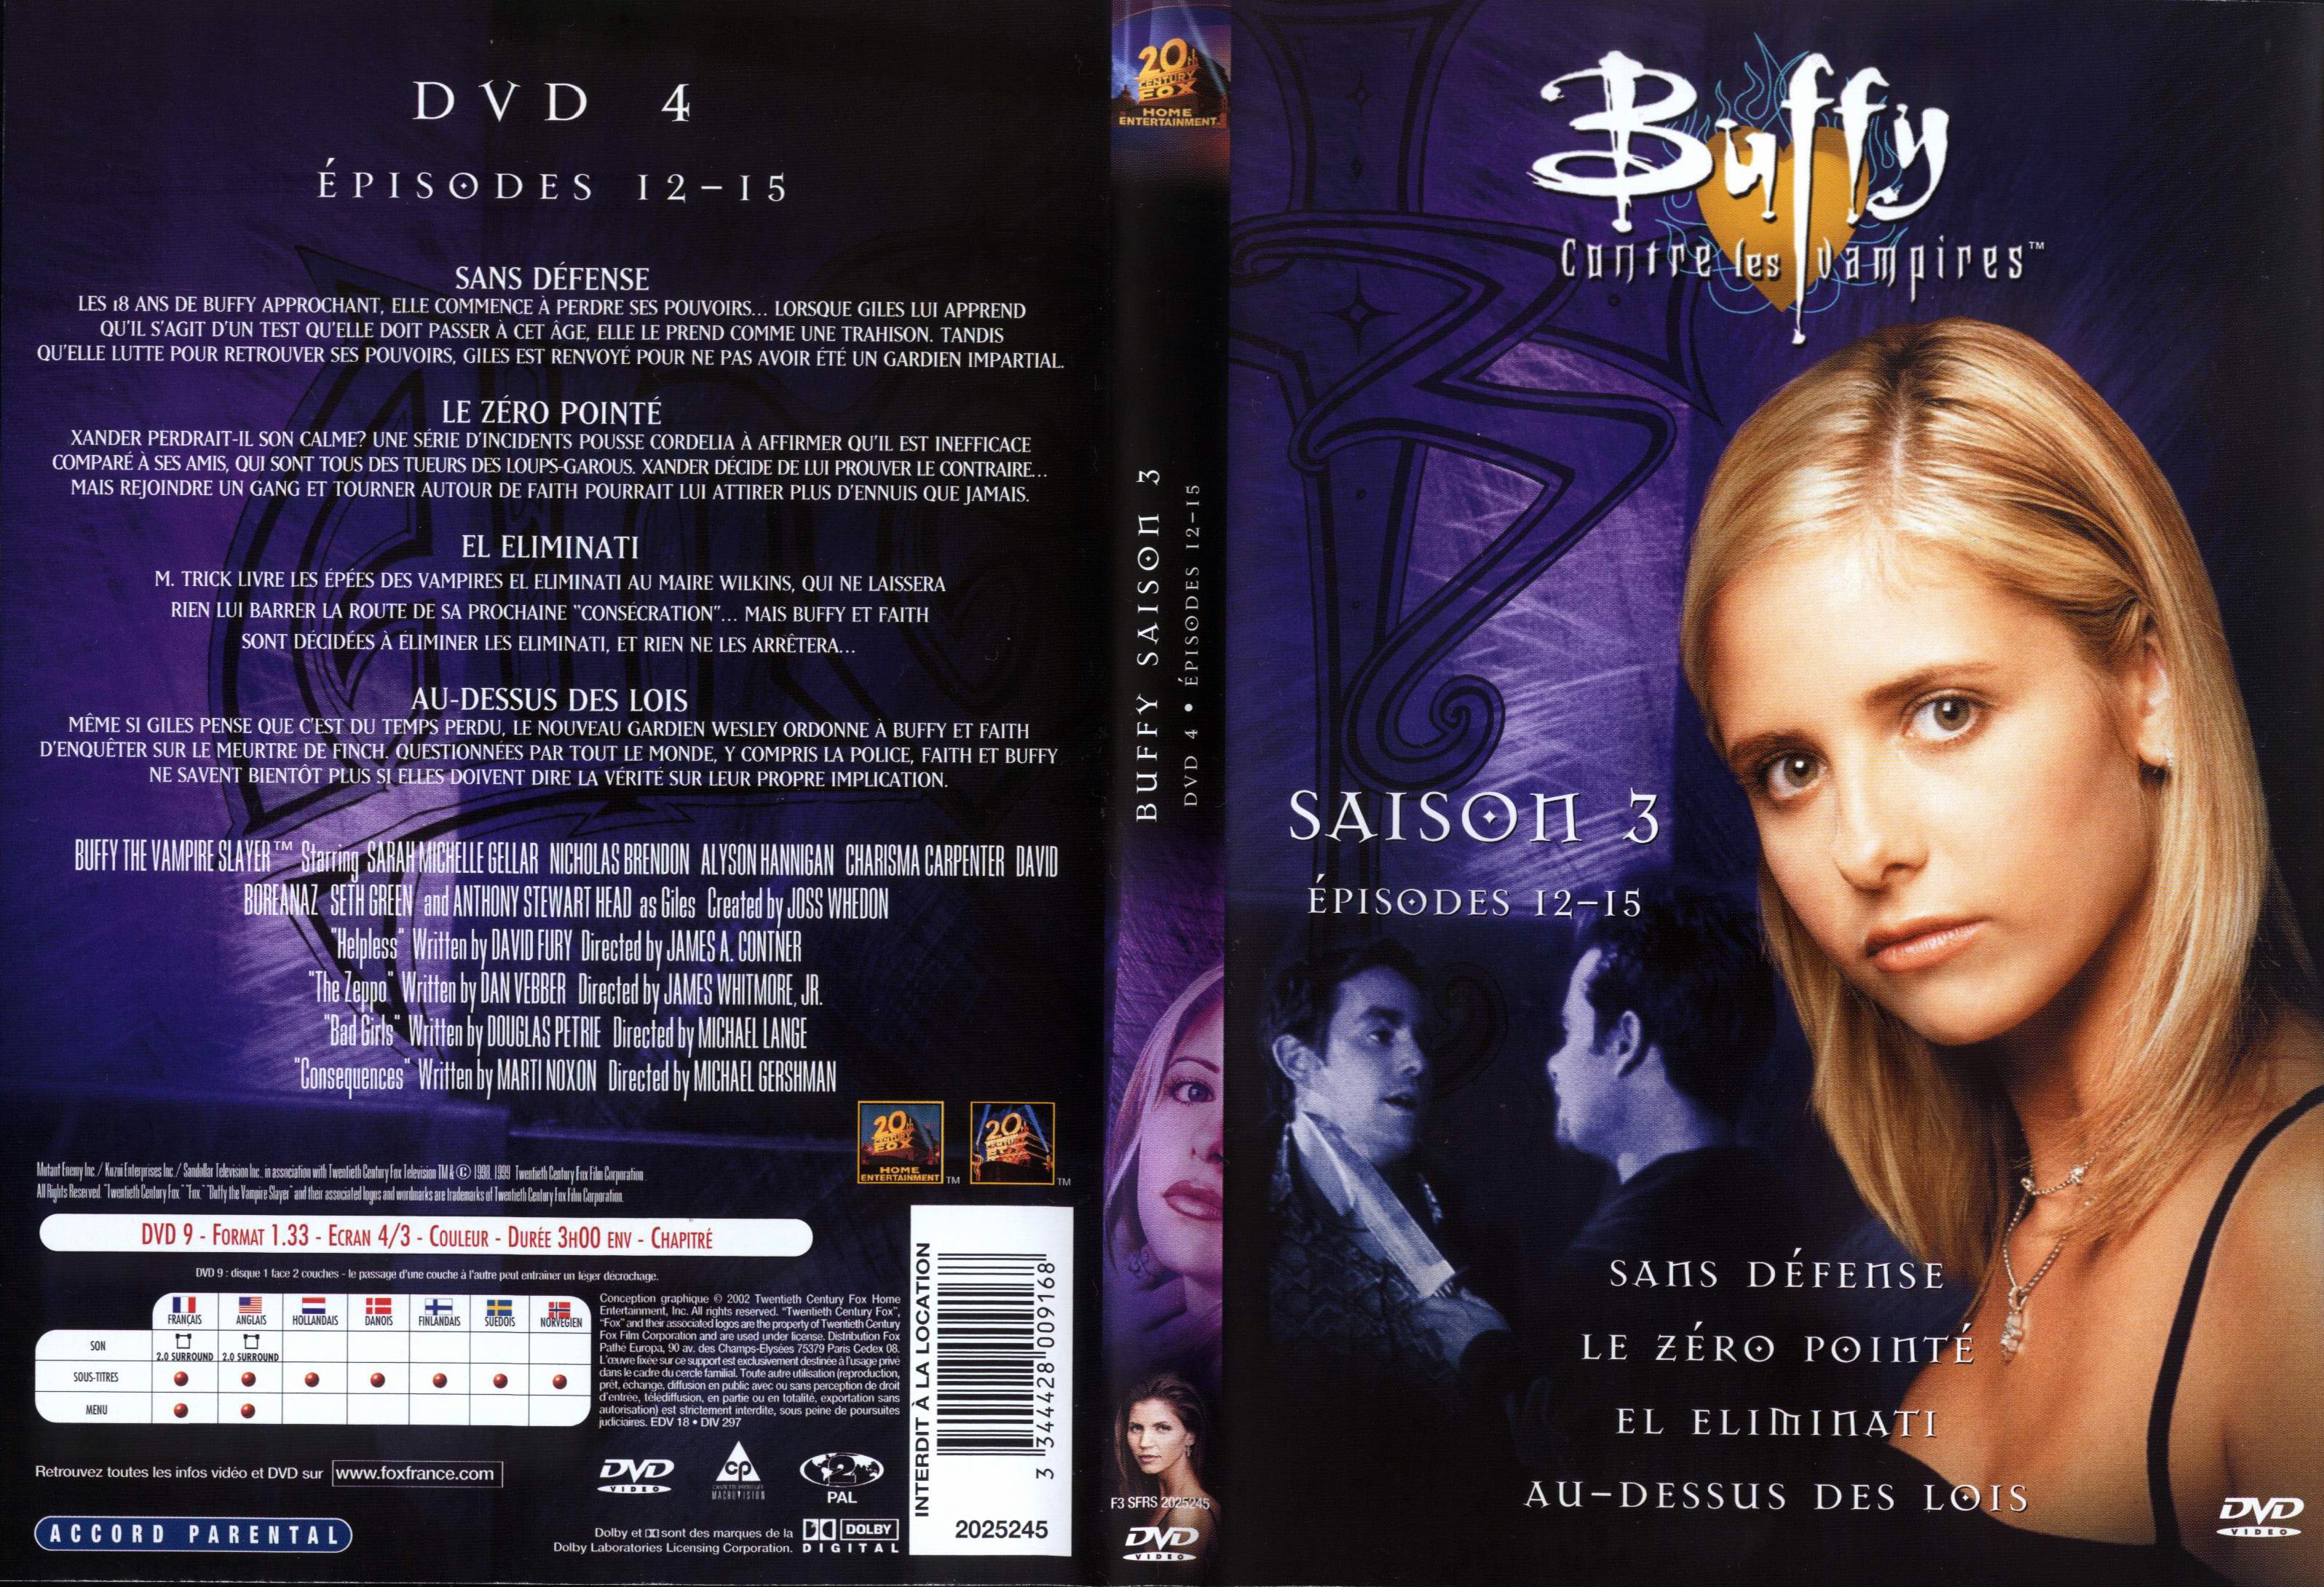 Jaquette DVD Buffy contre les vampires Saison 3 DVD 4